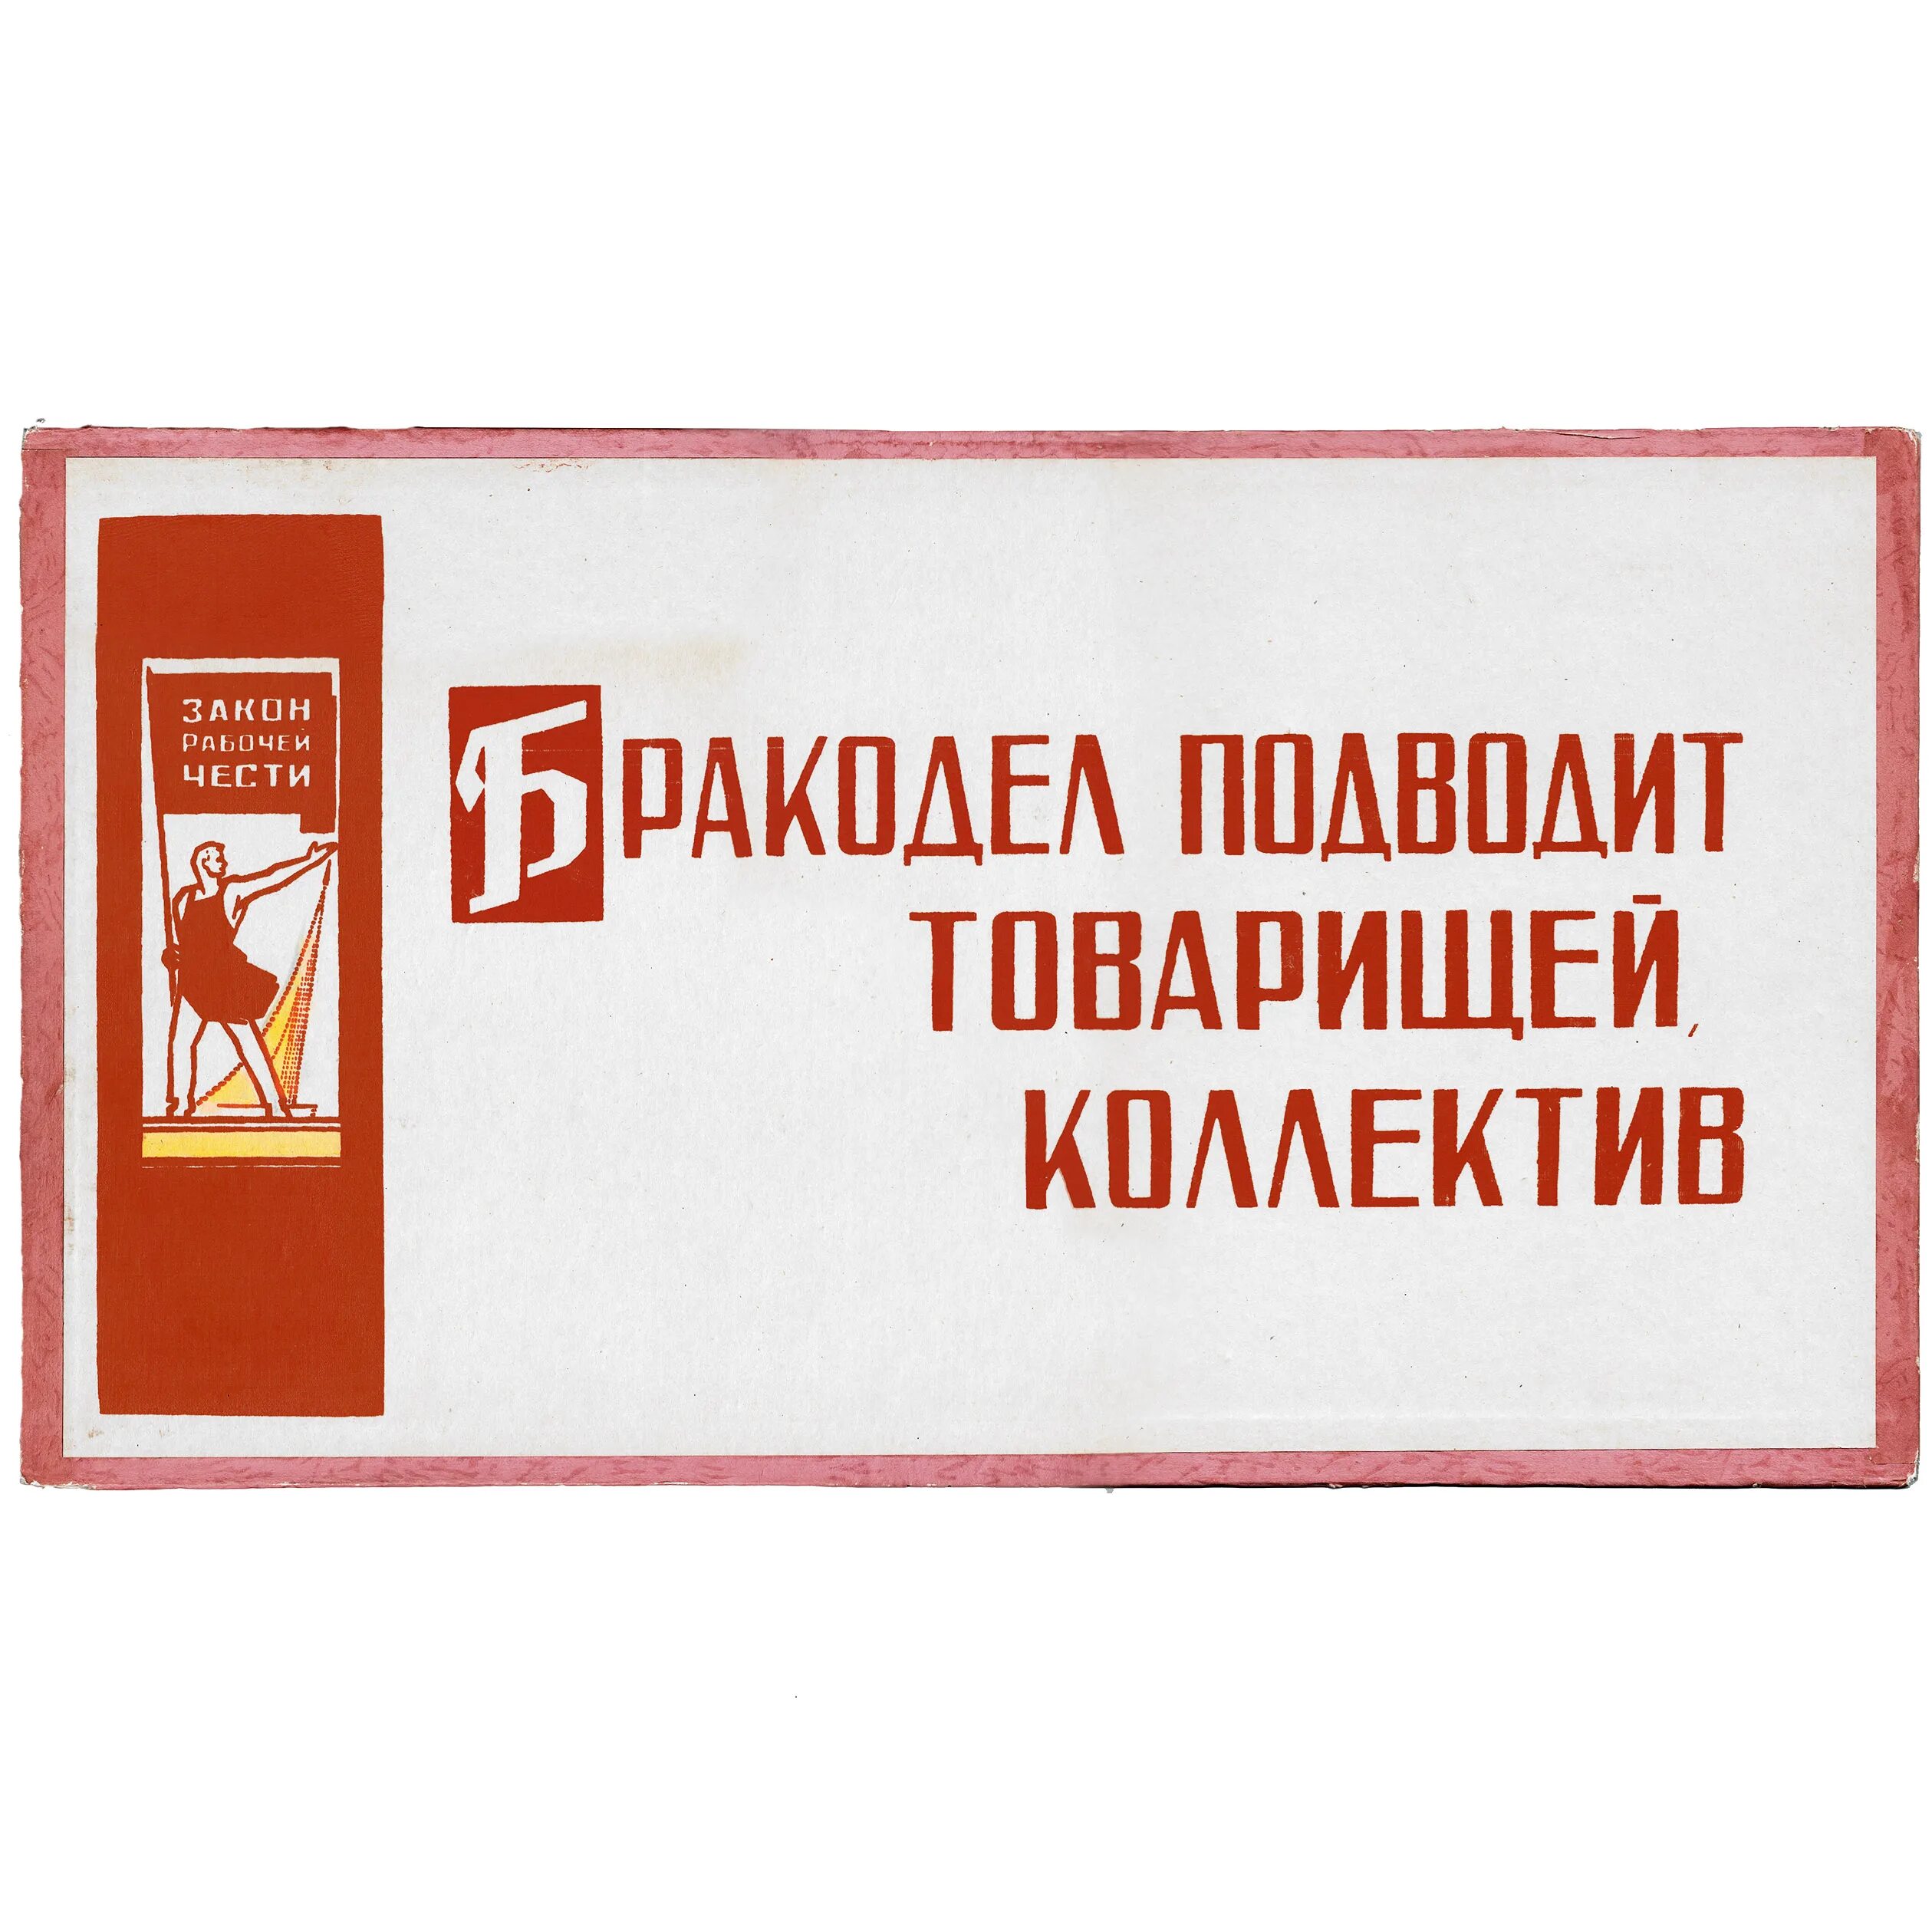 Рабочая совесть. Советские лозунги и плакаты. Советские лозунги на производстве. Советские лозунги на заводах. Советские плакаты про качество продукции.